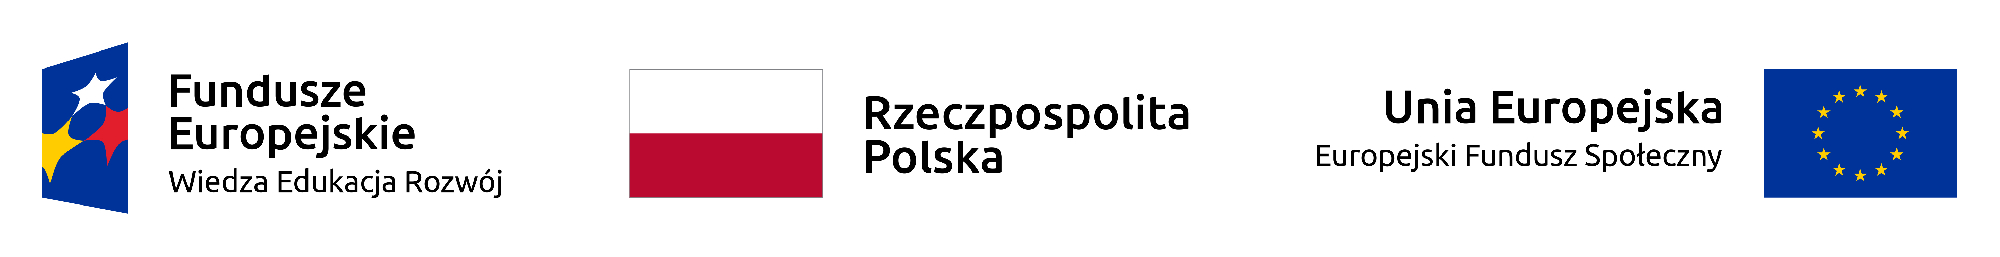 Znaczki flga Polski i UE